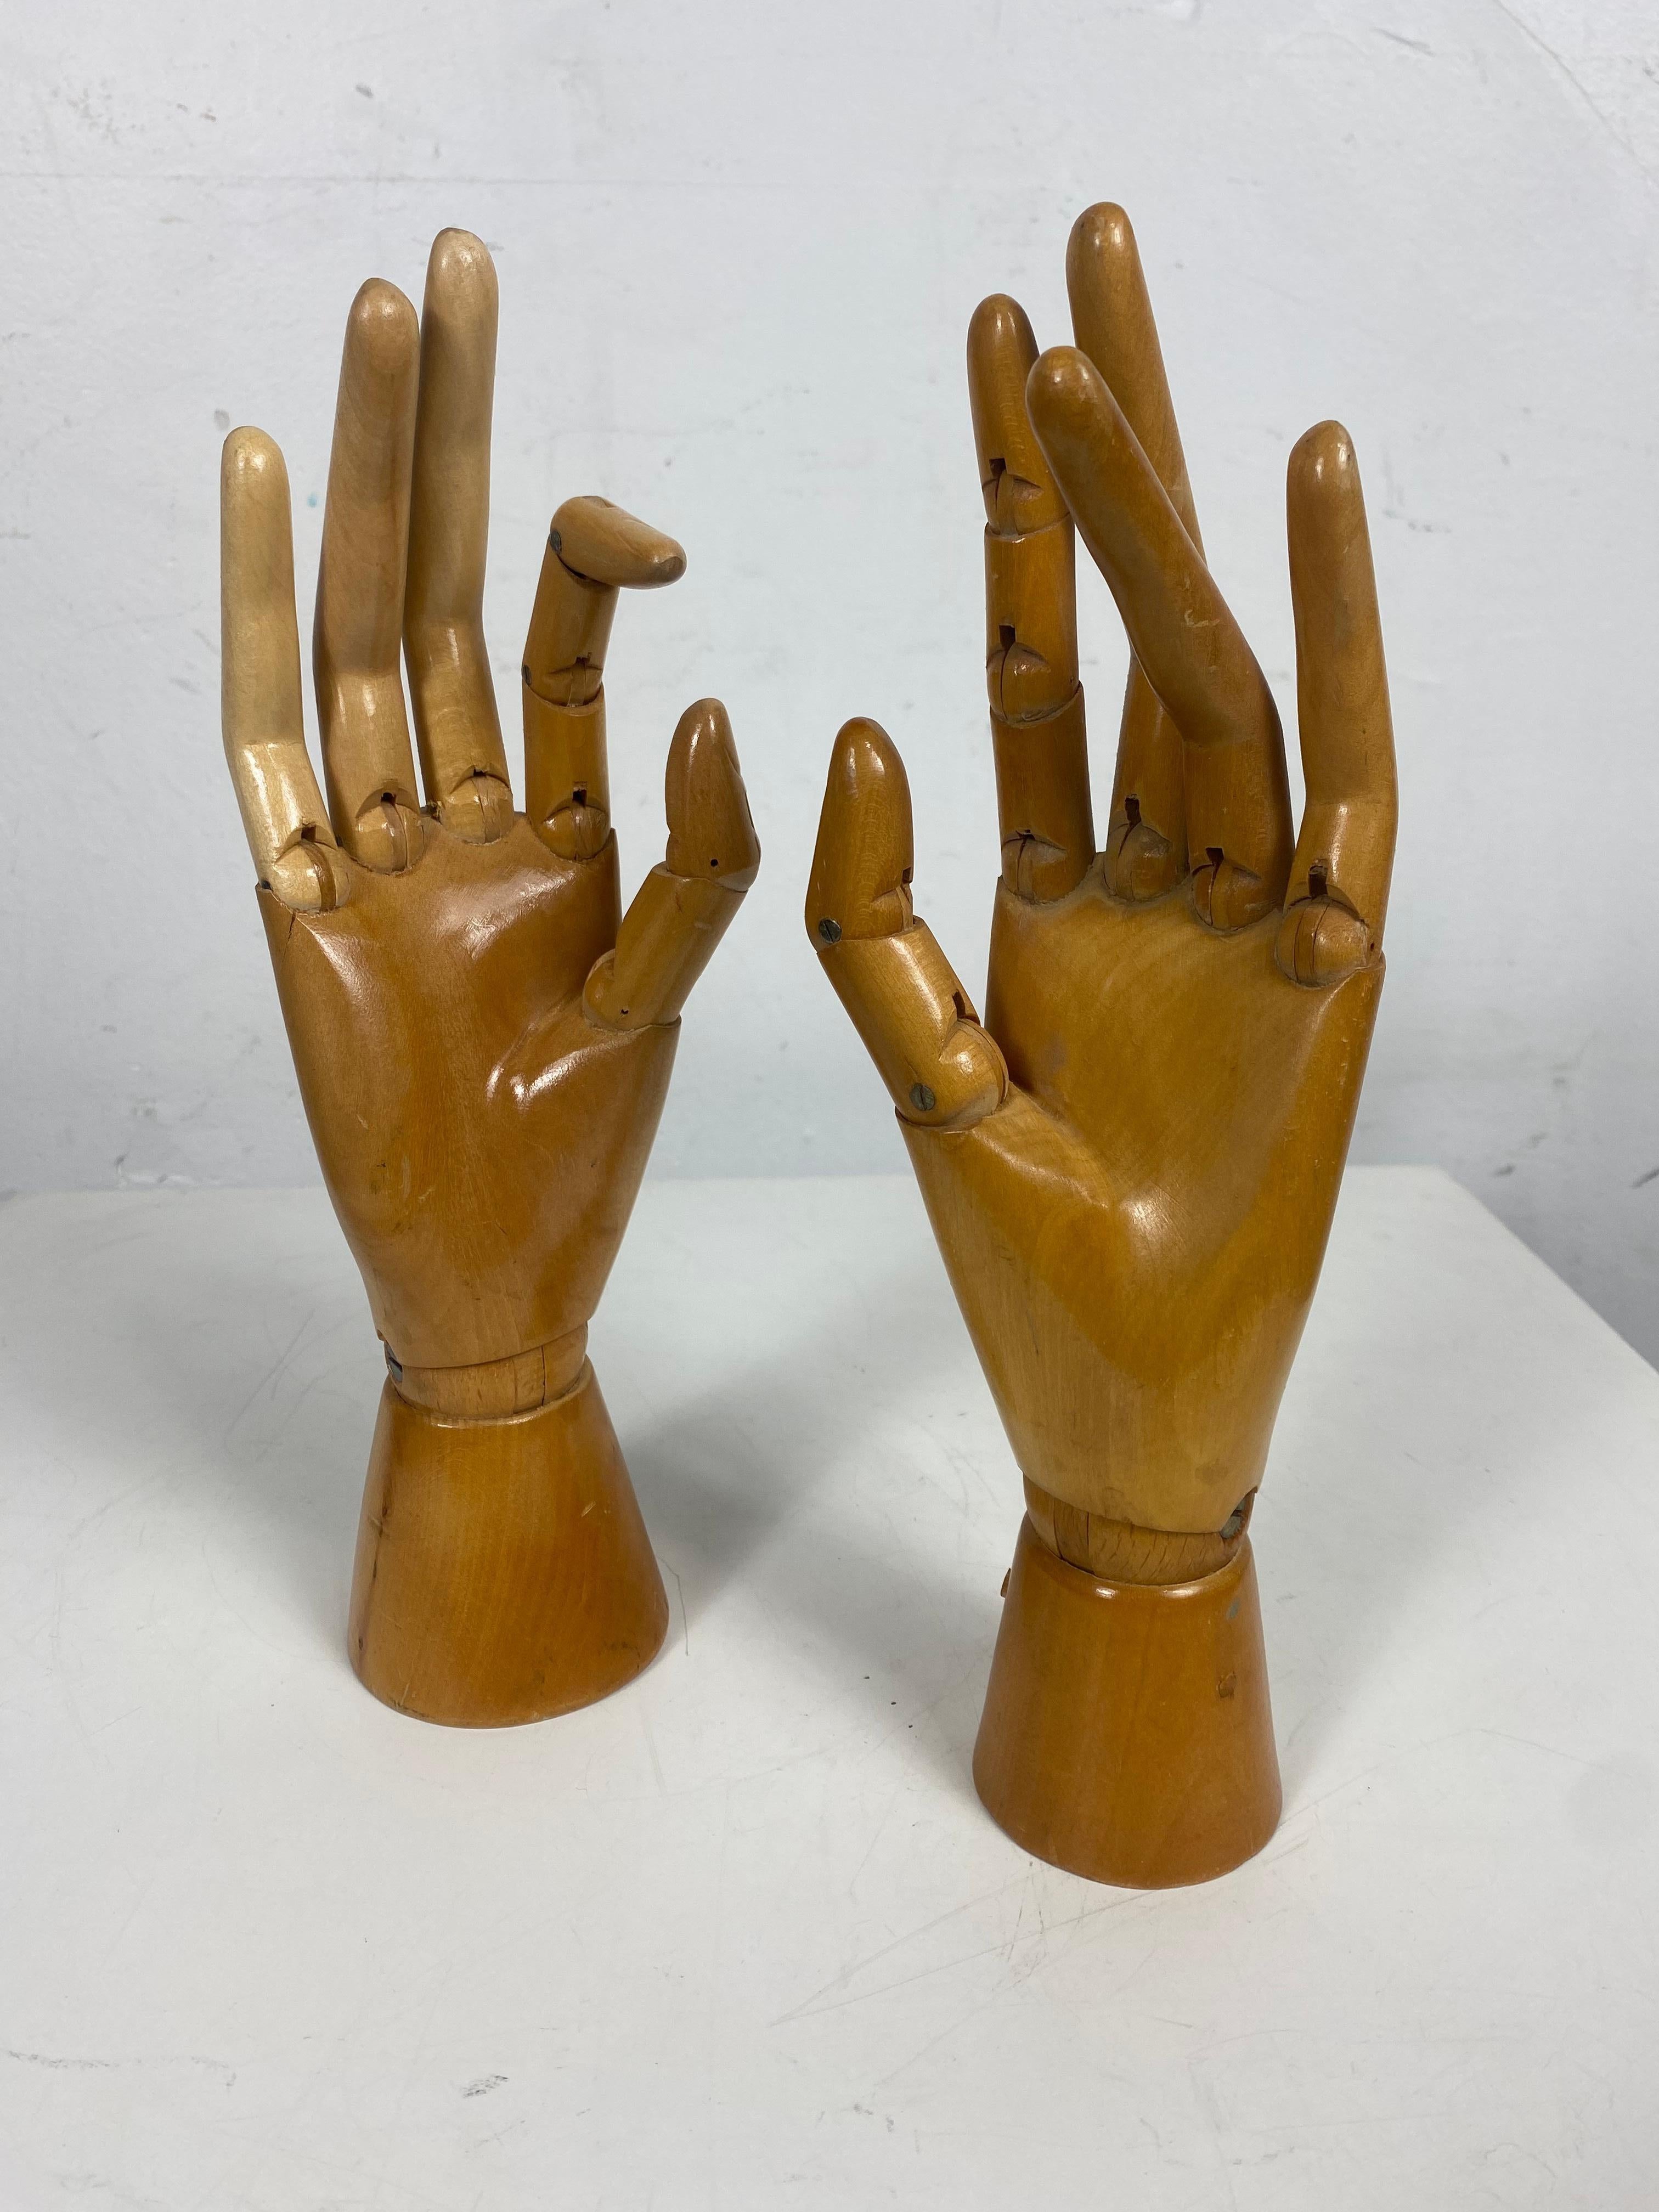 Belgian 1930s/ 1940s Articulated Wooden Hands, Artist Model, Drawing Tool, Belgium